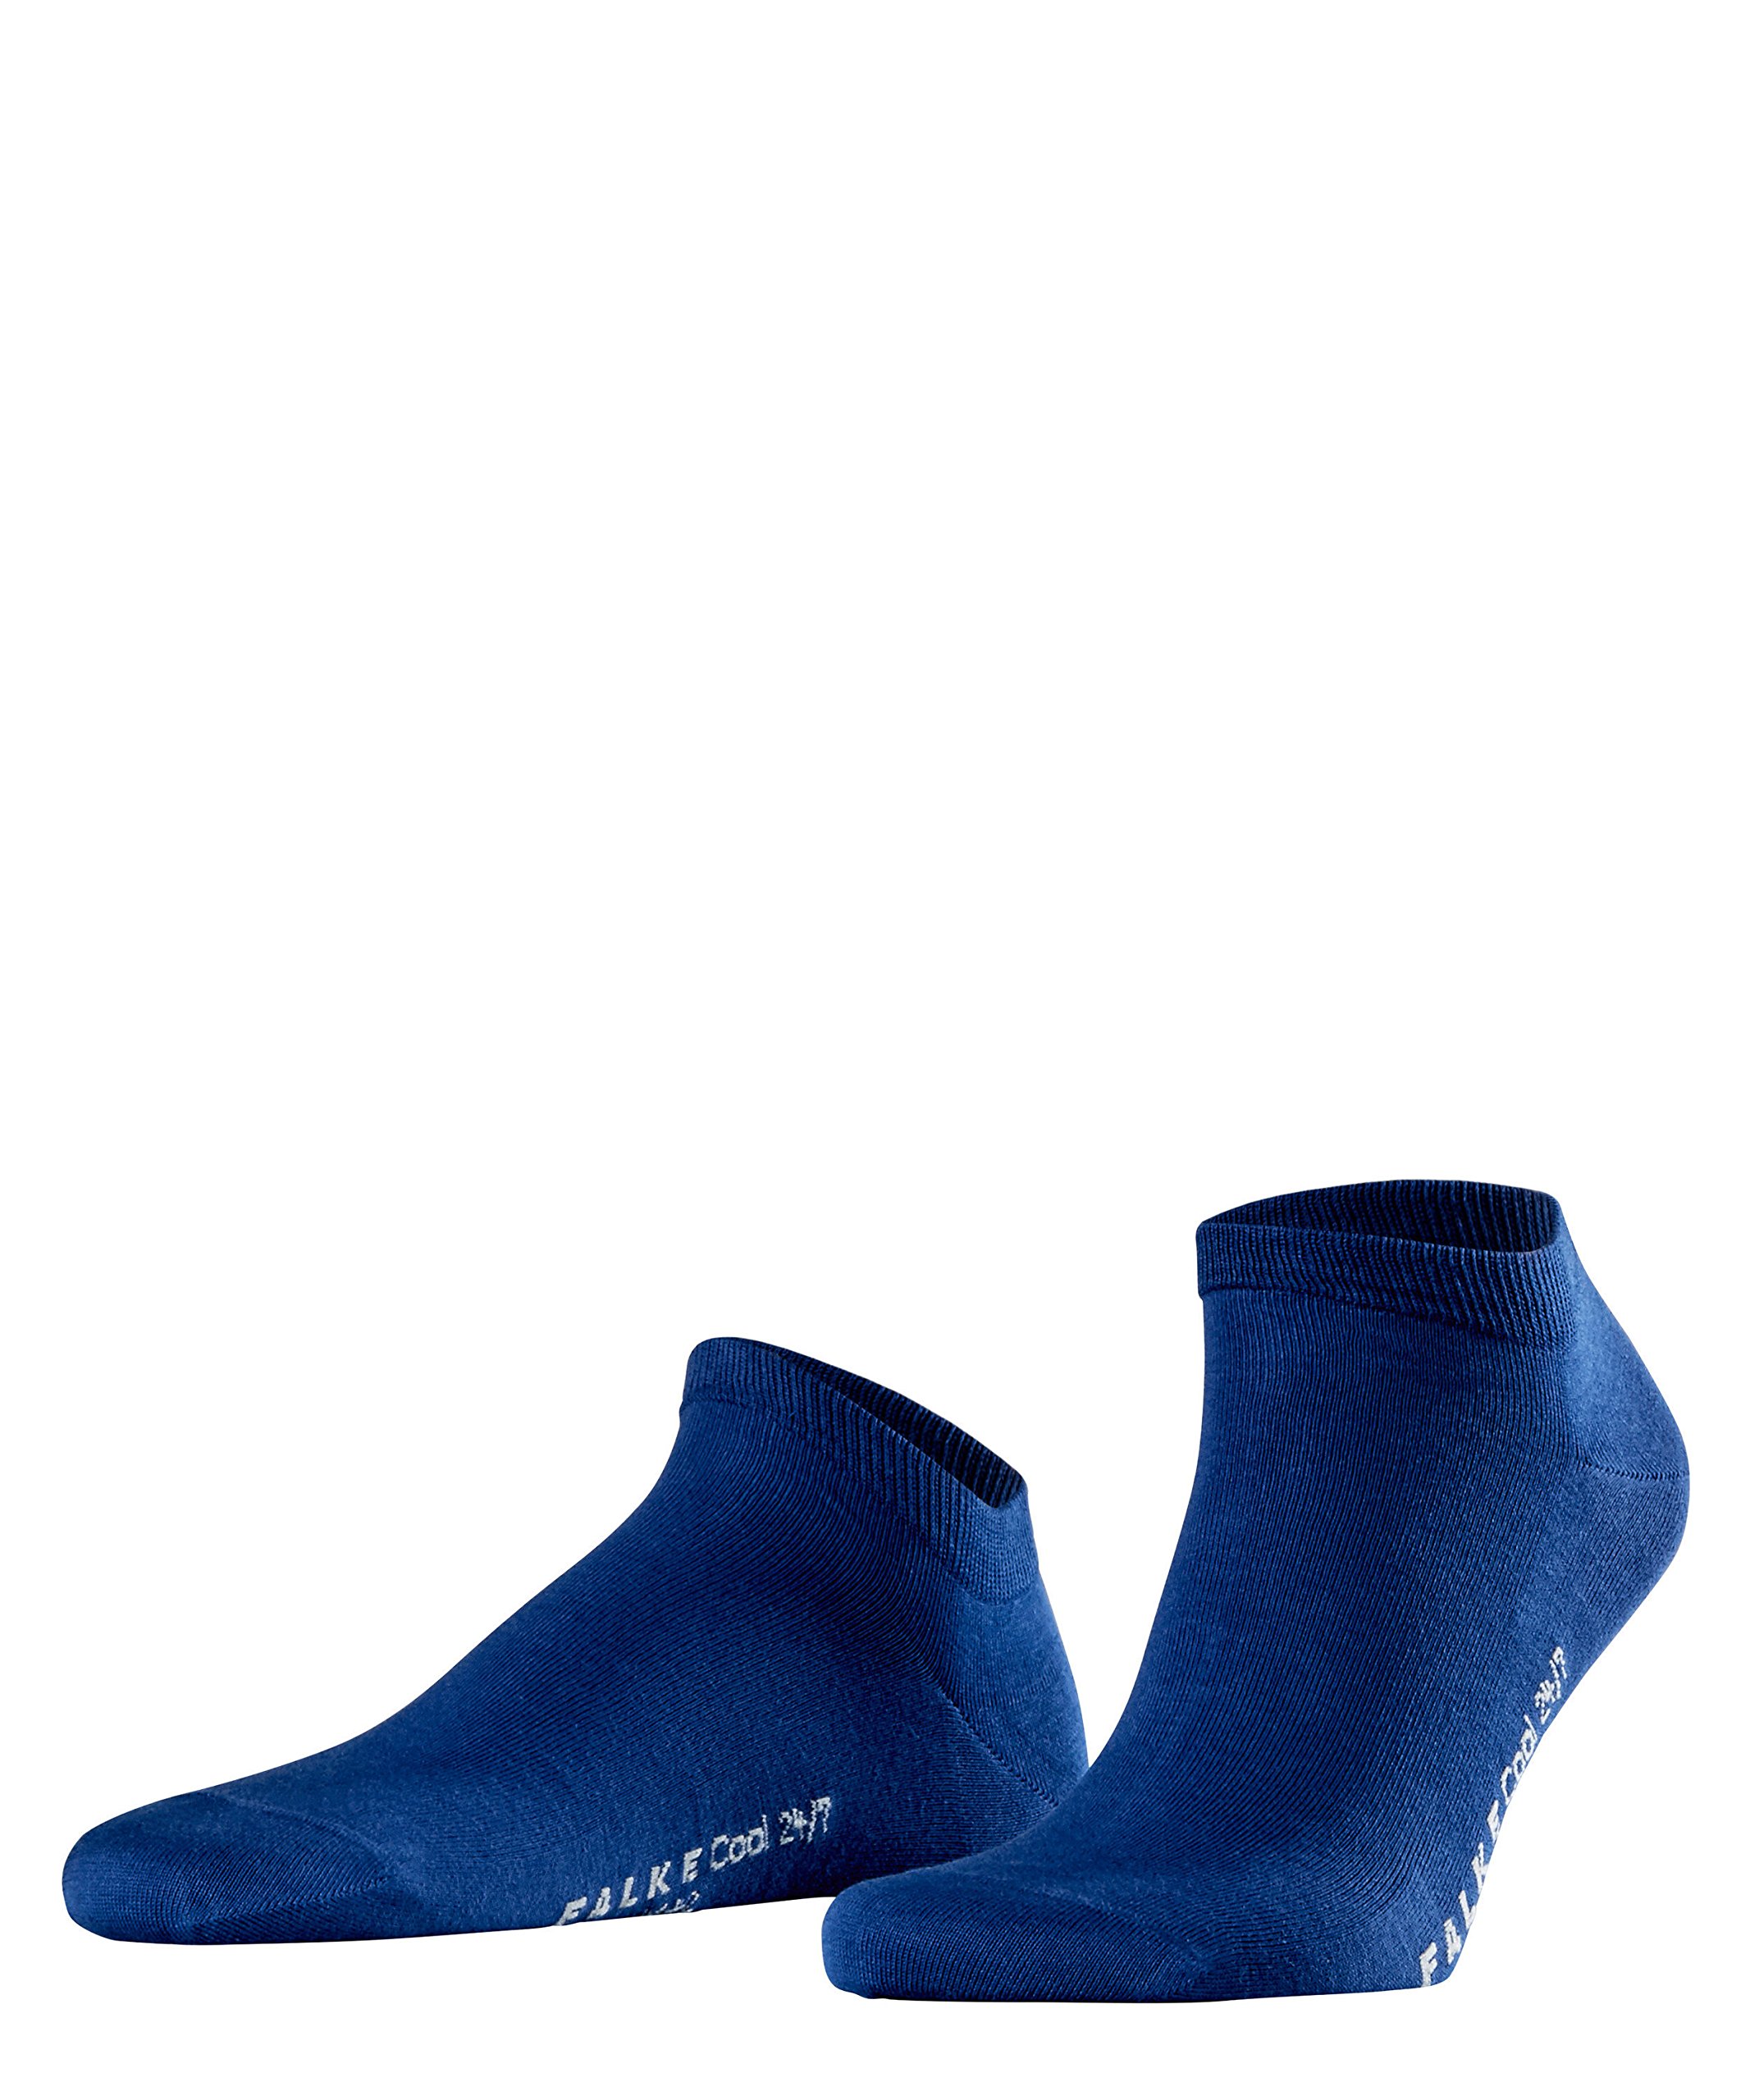 FALKE City Herren Sneaker Cool 24/7 2er Pack, Größe:43/44;Farbe:Royal Blue (6000)